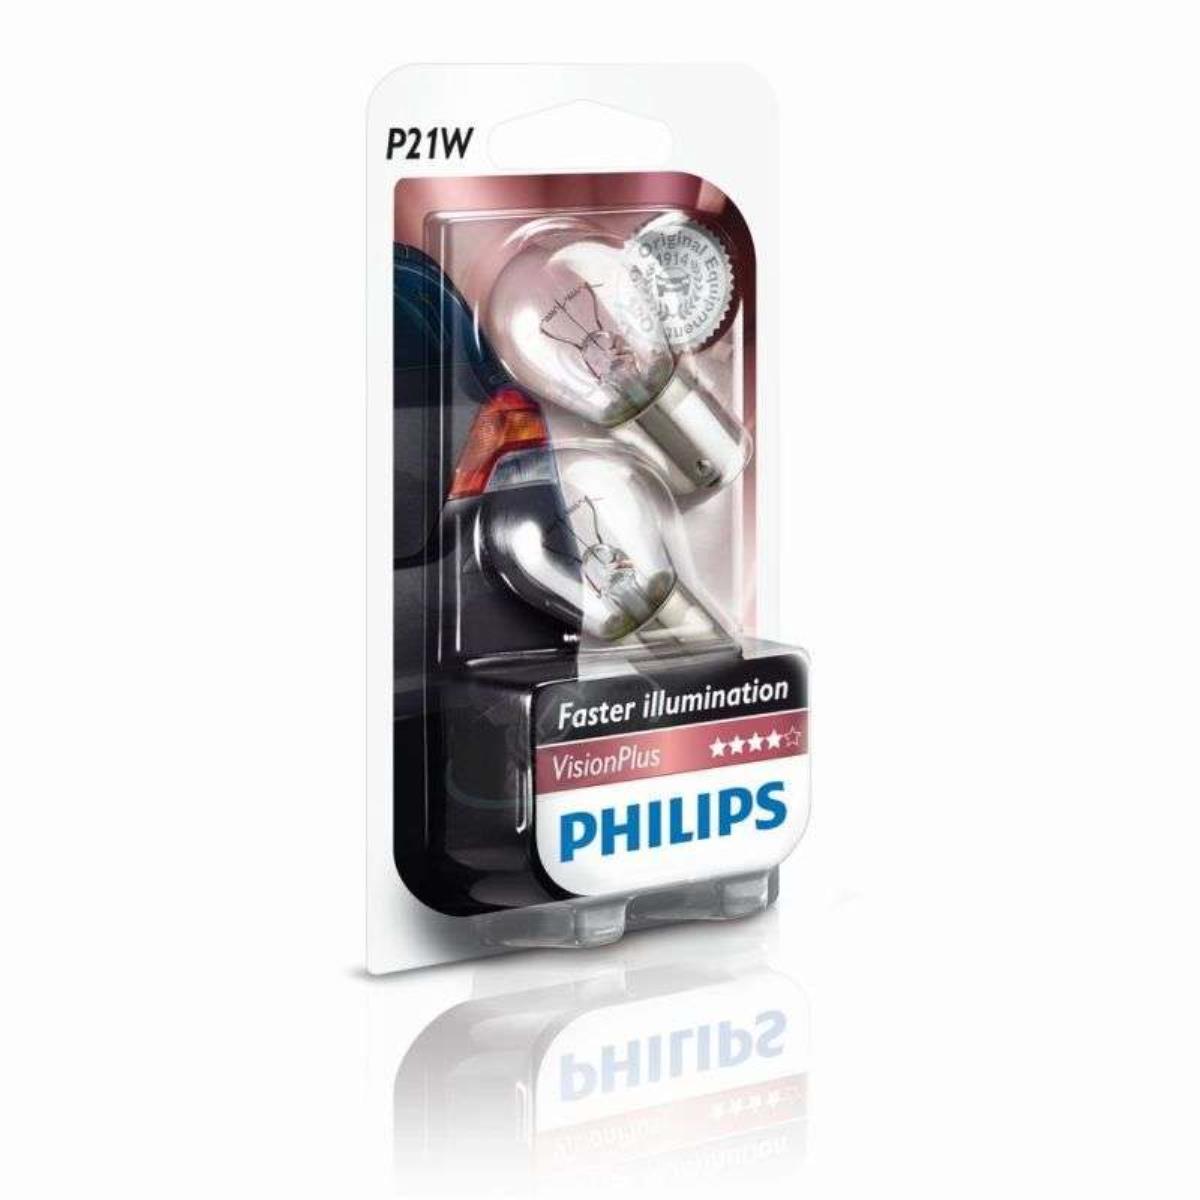 Philips VisionPlus P21W Signalbeleuchtung und Innenbeleuchtung 